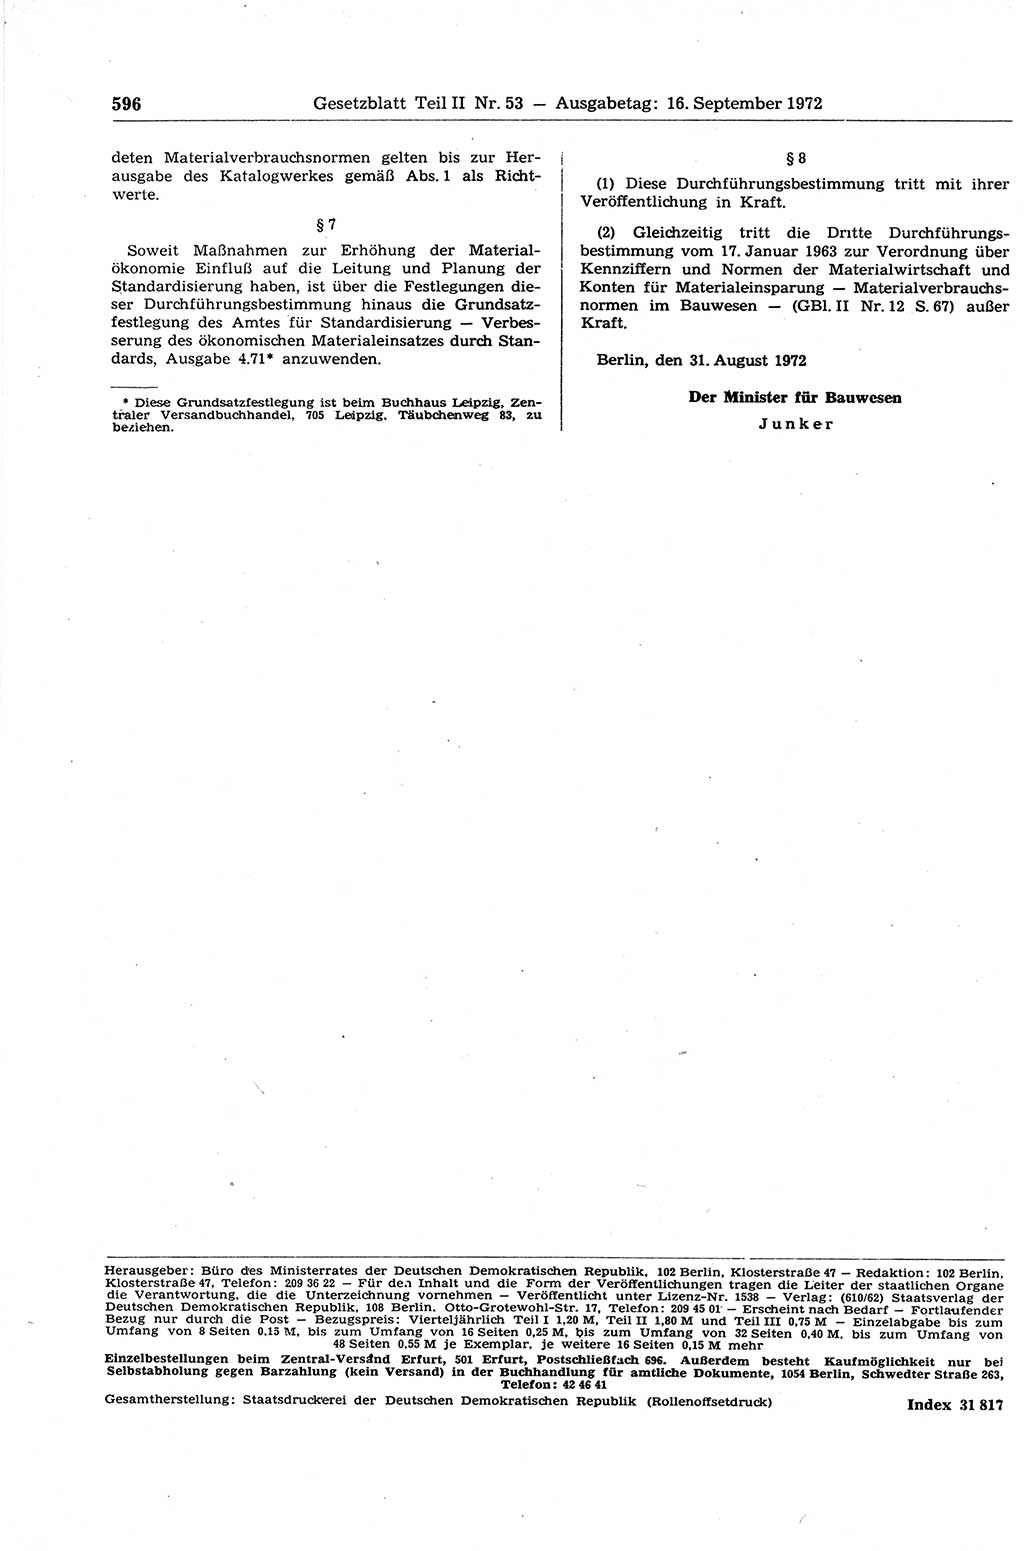 Gesetzblatt (GBl.) der Deutschen Demokratischen Republik (DDR) Teil ⅠⅠ 1972, Seite 596 (GBl. DDR ⅠⅠ 1972, S. 596)